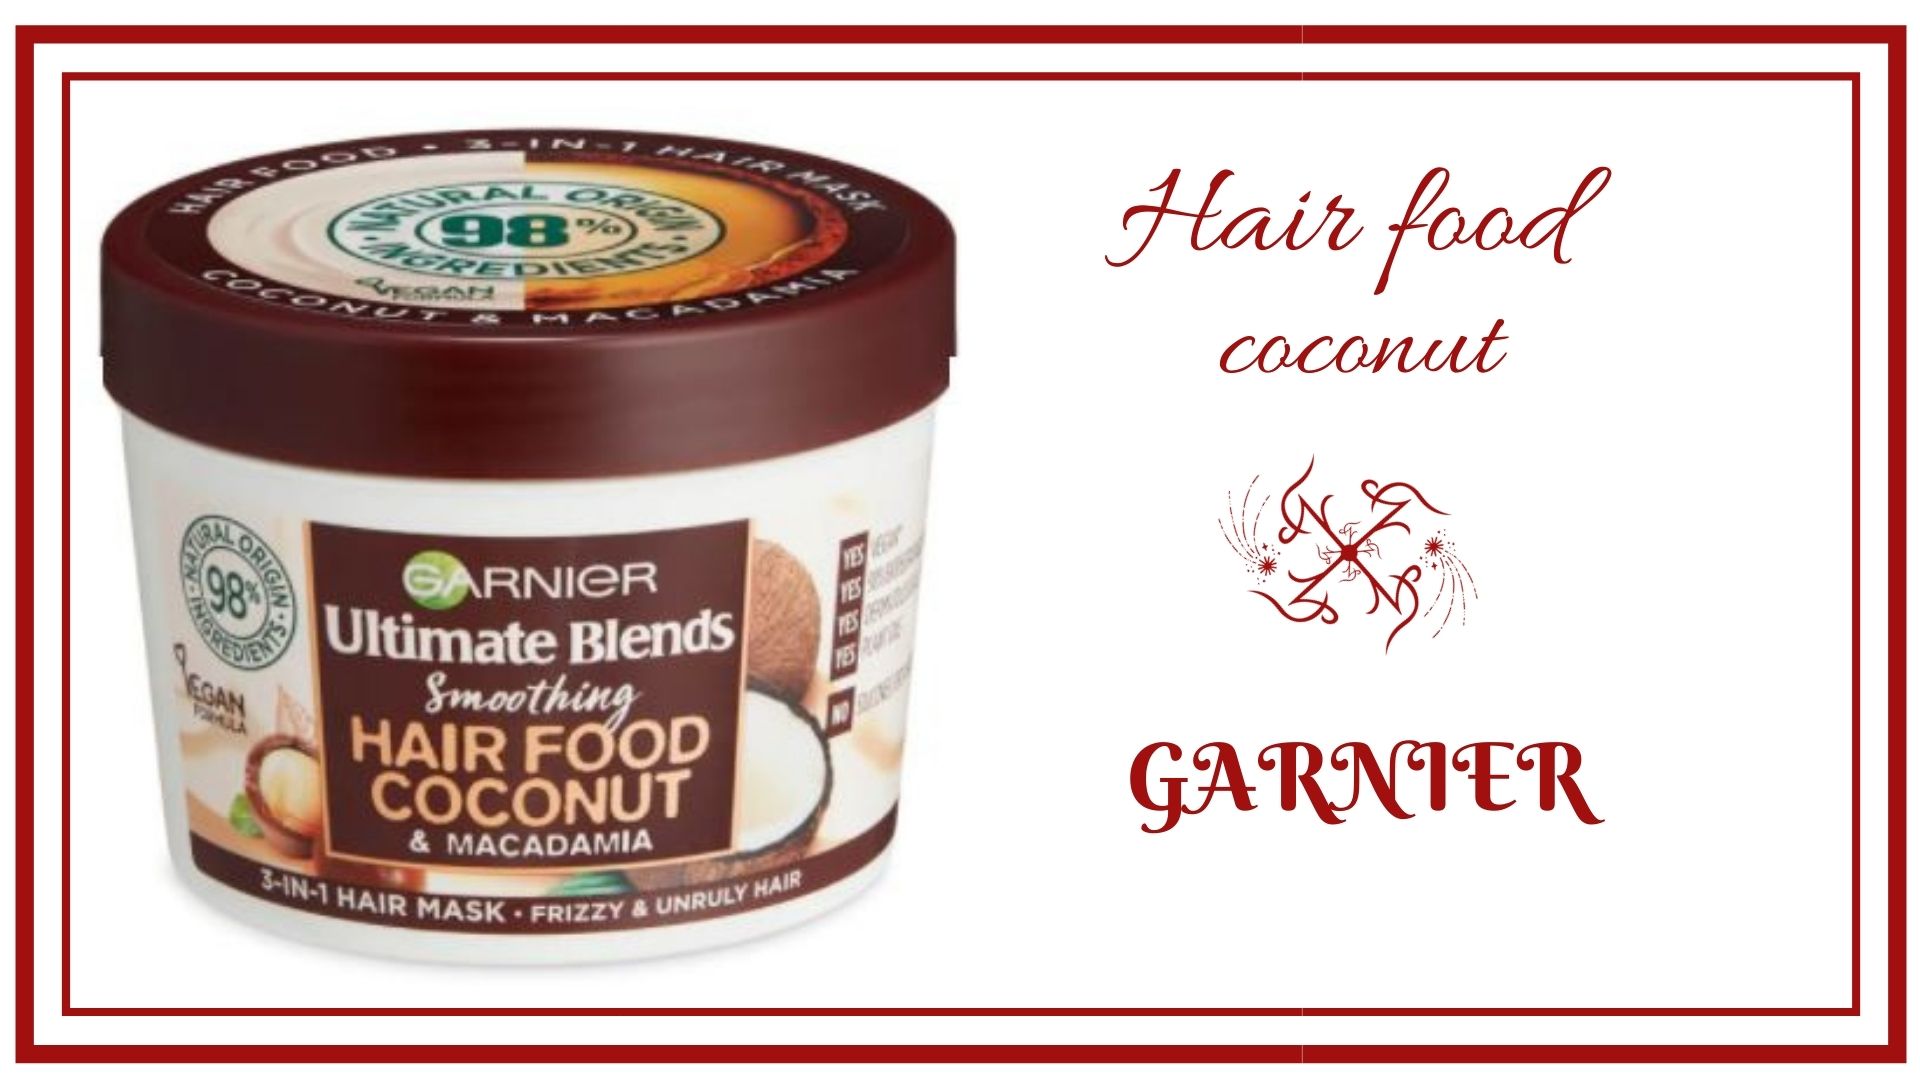 Hair food coconut